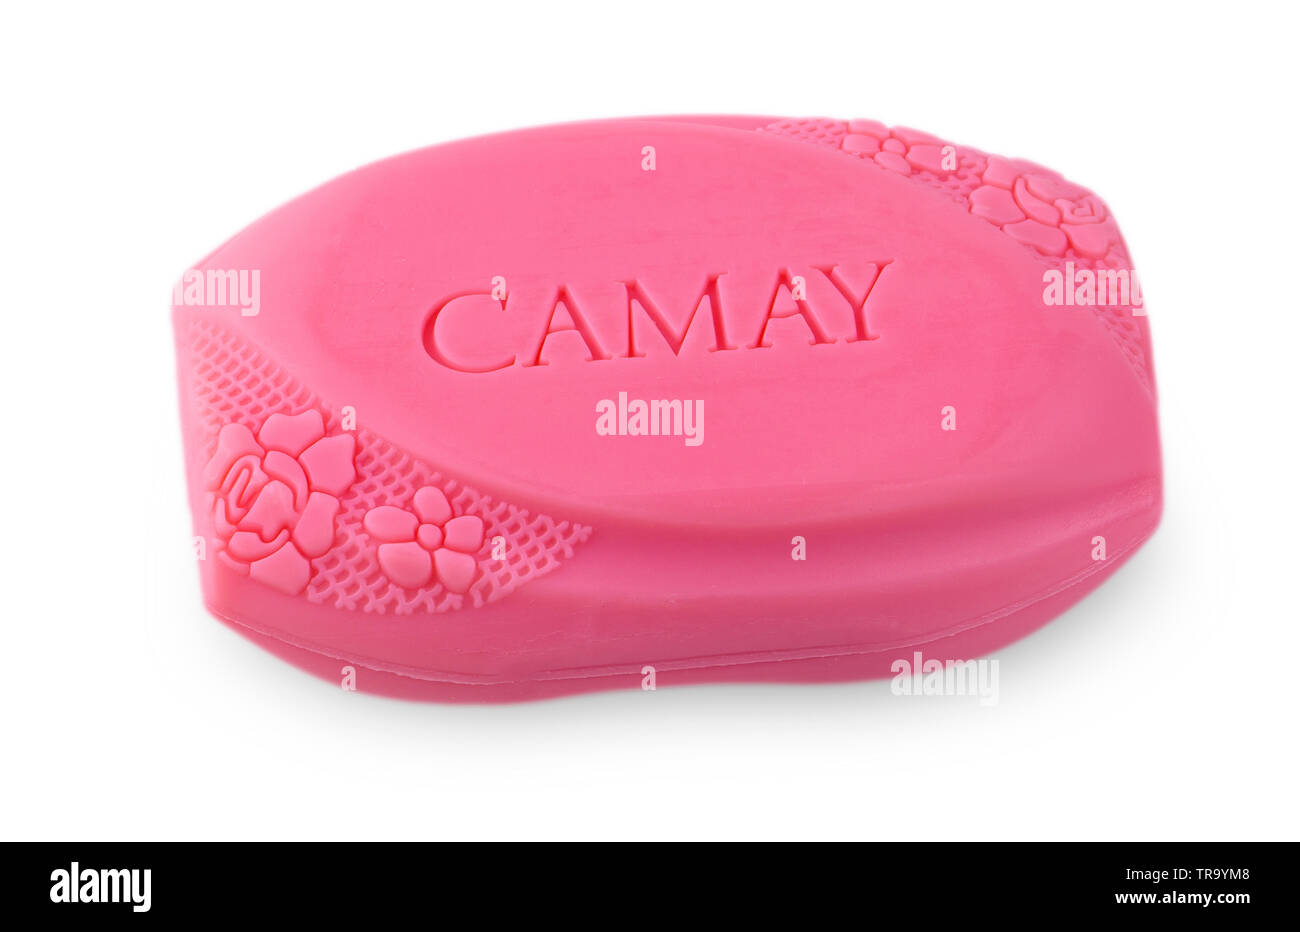 Camay soap immagini e fotografie stock ad alta risoluzione - Alamy